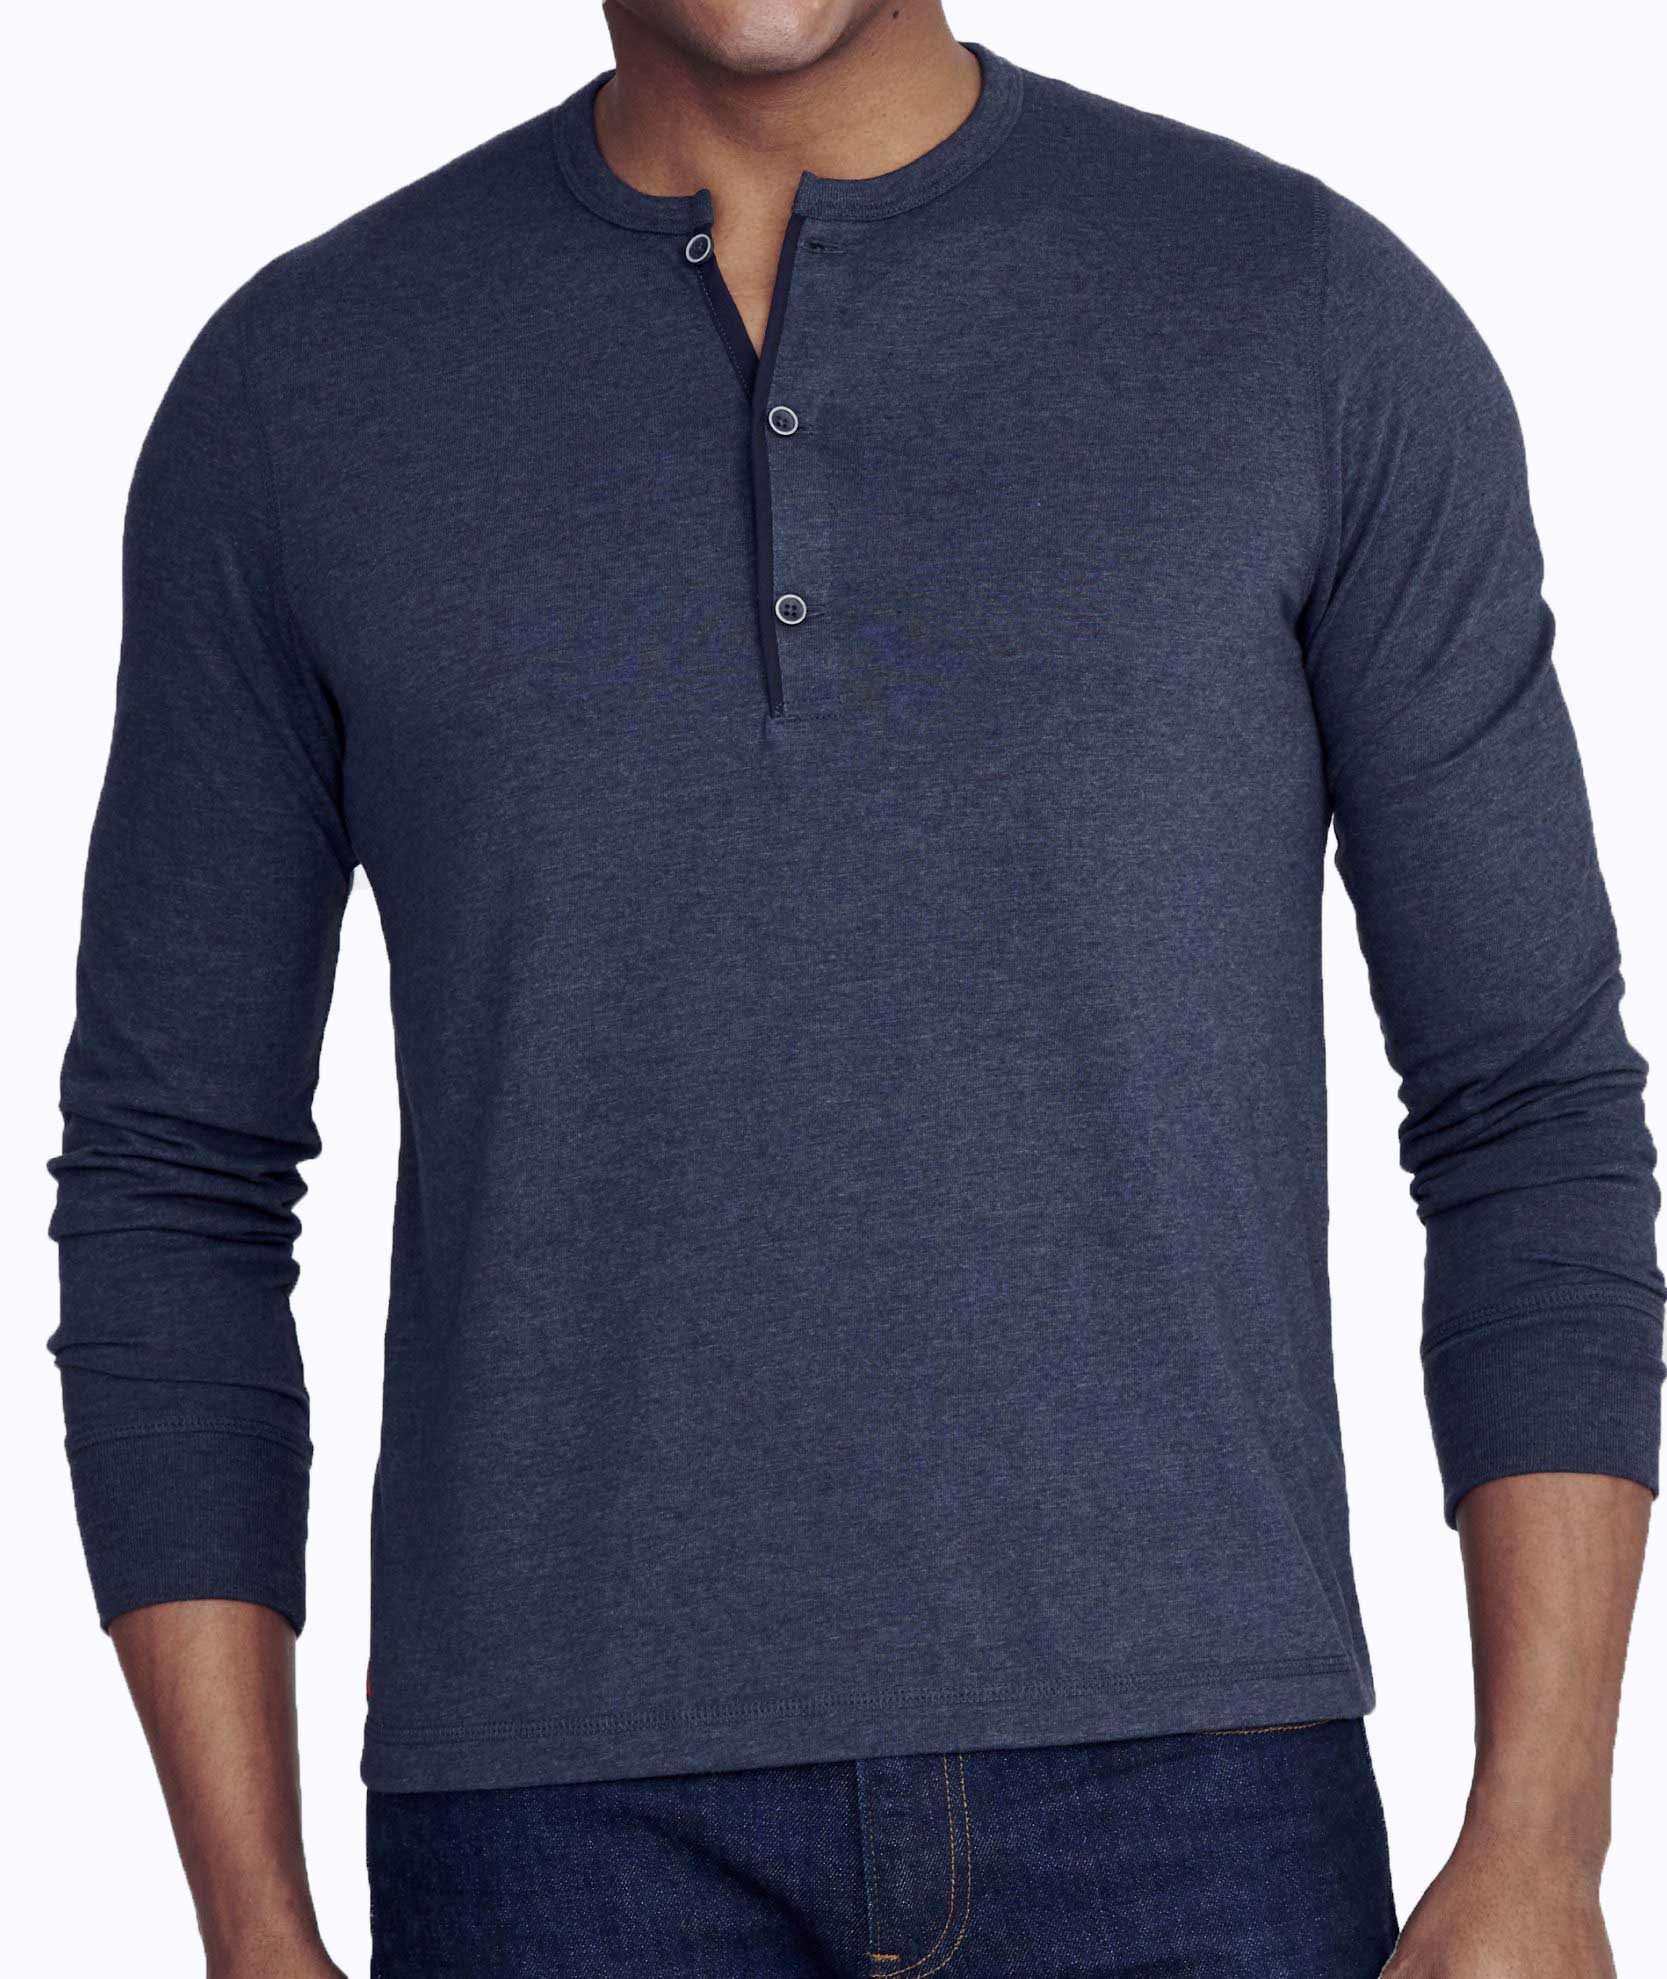 Men's Long Sleeve Textured Henley Shirt - Goodfellow & Co™ : Target